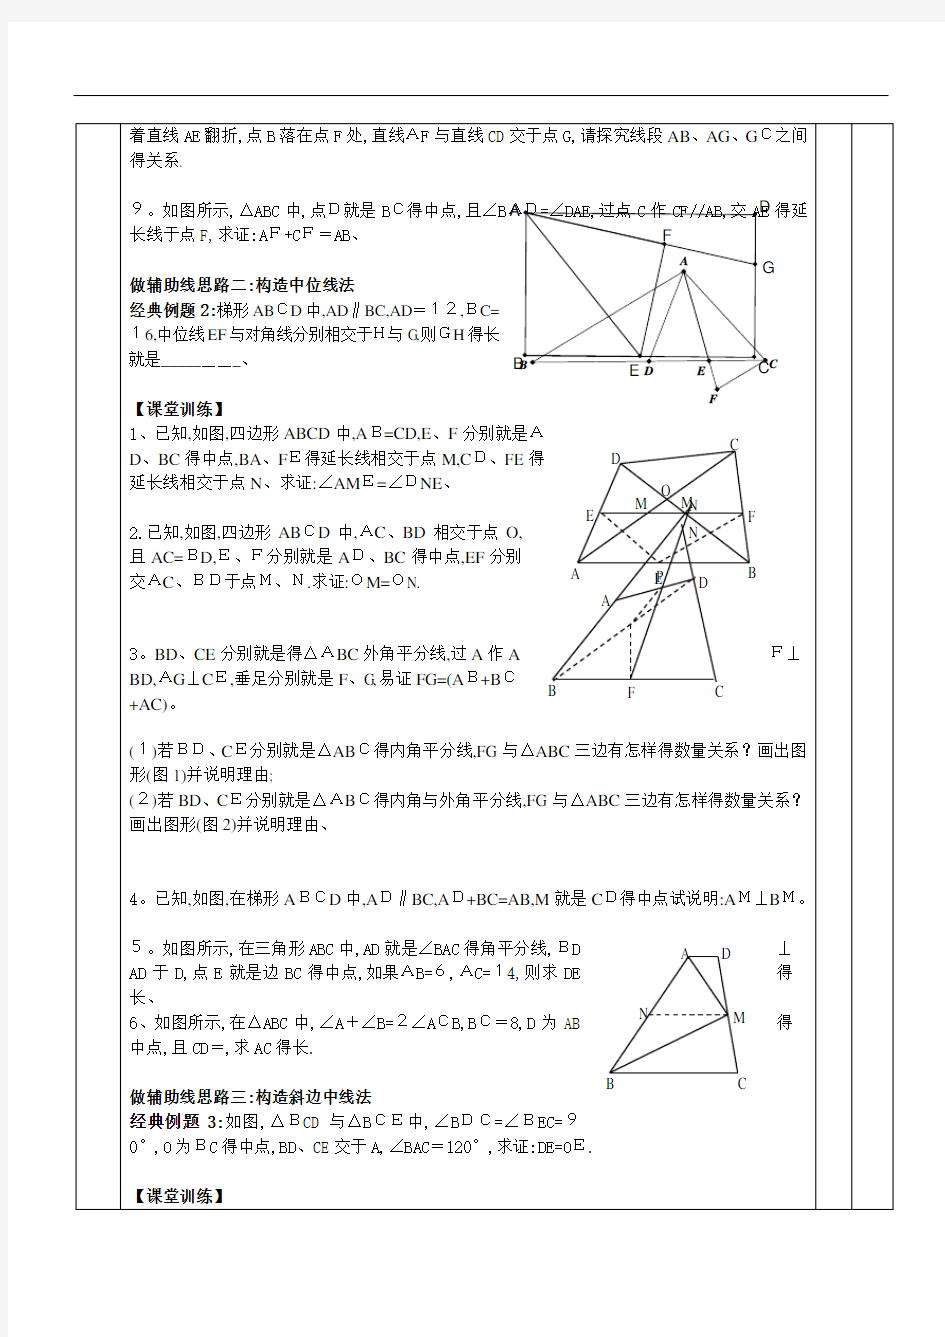 初中数学《几何辅助线秘籍》中点模型的构造1(倍长中线法;构造中位线法)